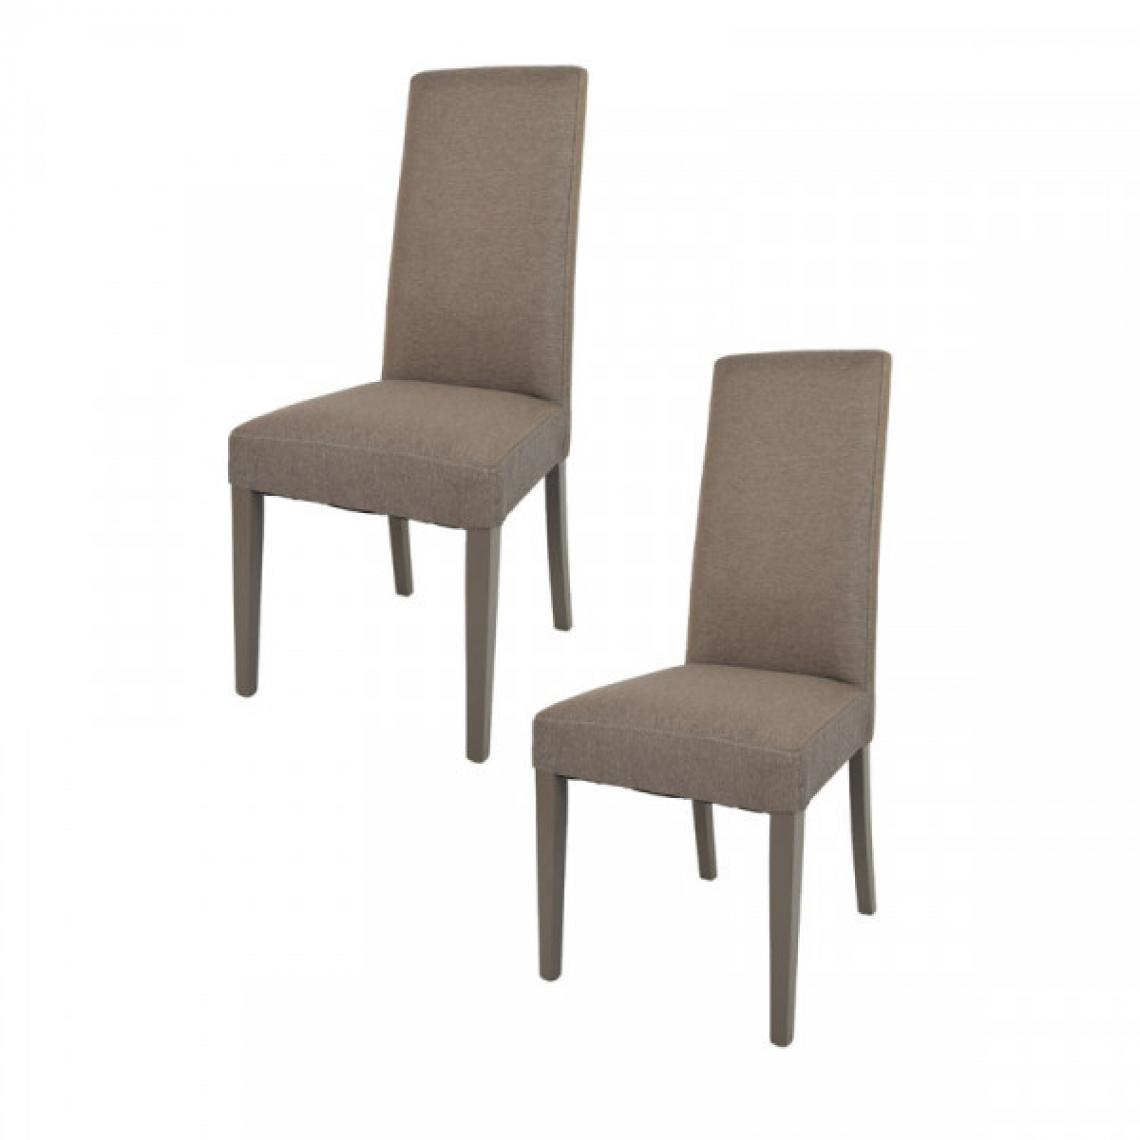 Dansmamaison - Duo de chaises tissu Marron - PISE - L 54 x l 46 x H 99 cm - Chaises